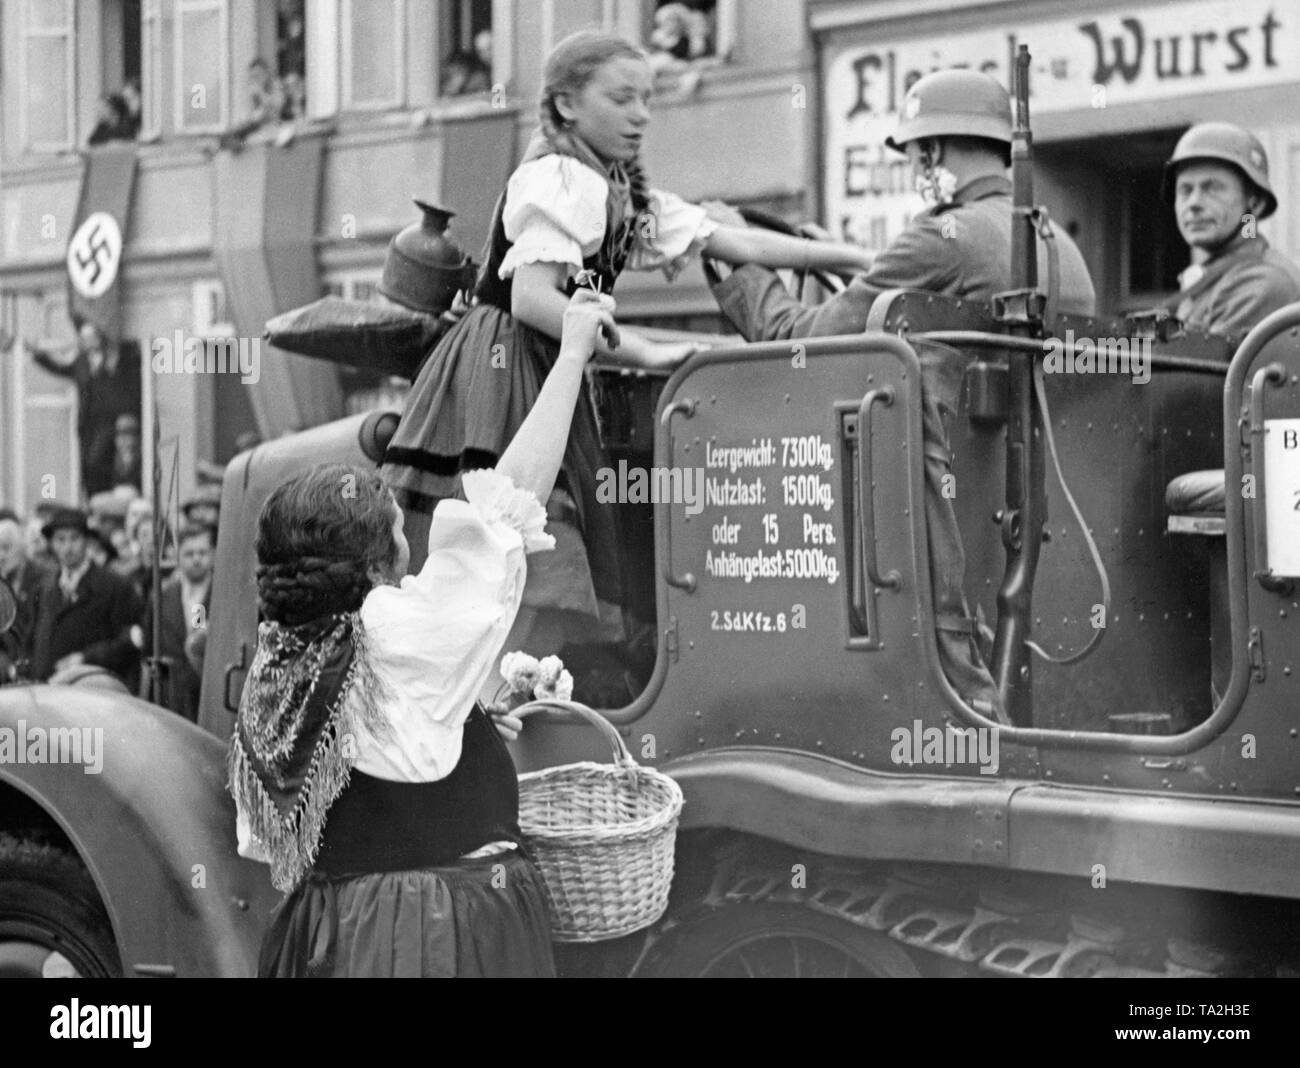 Une jeune fille monte dans un véhicule (Zugmaschine Sdkfz 6) de la Wehrmacht en Grottau (aujourd'hui Hradek nad Nisou) le 3 octobre 1938. Le véhicule appartient à l'une des troupes d'occupation de la ville et des Sudètes. Banque D'Images